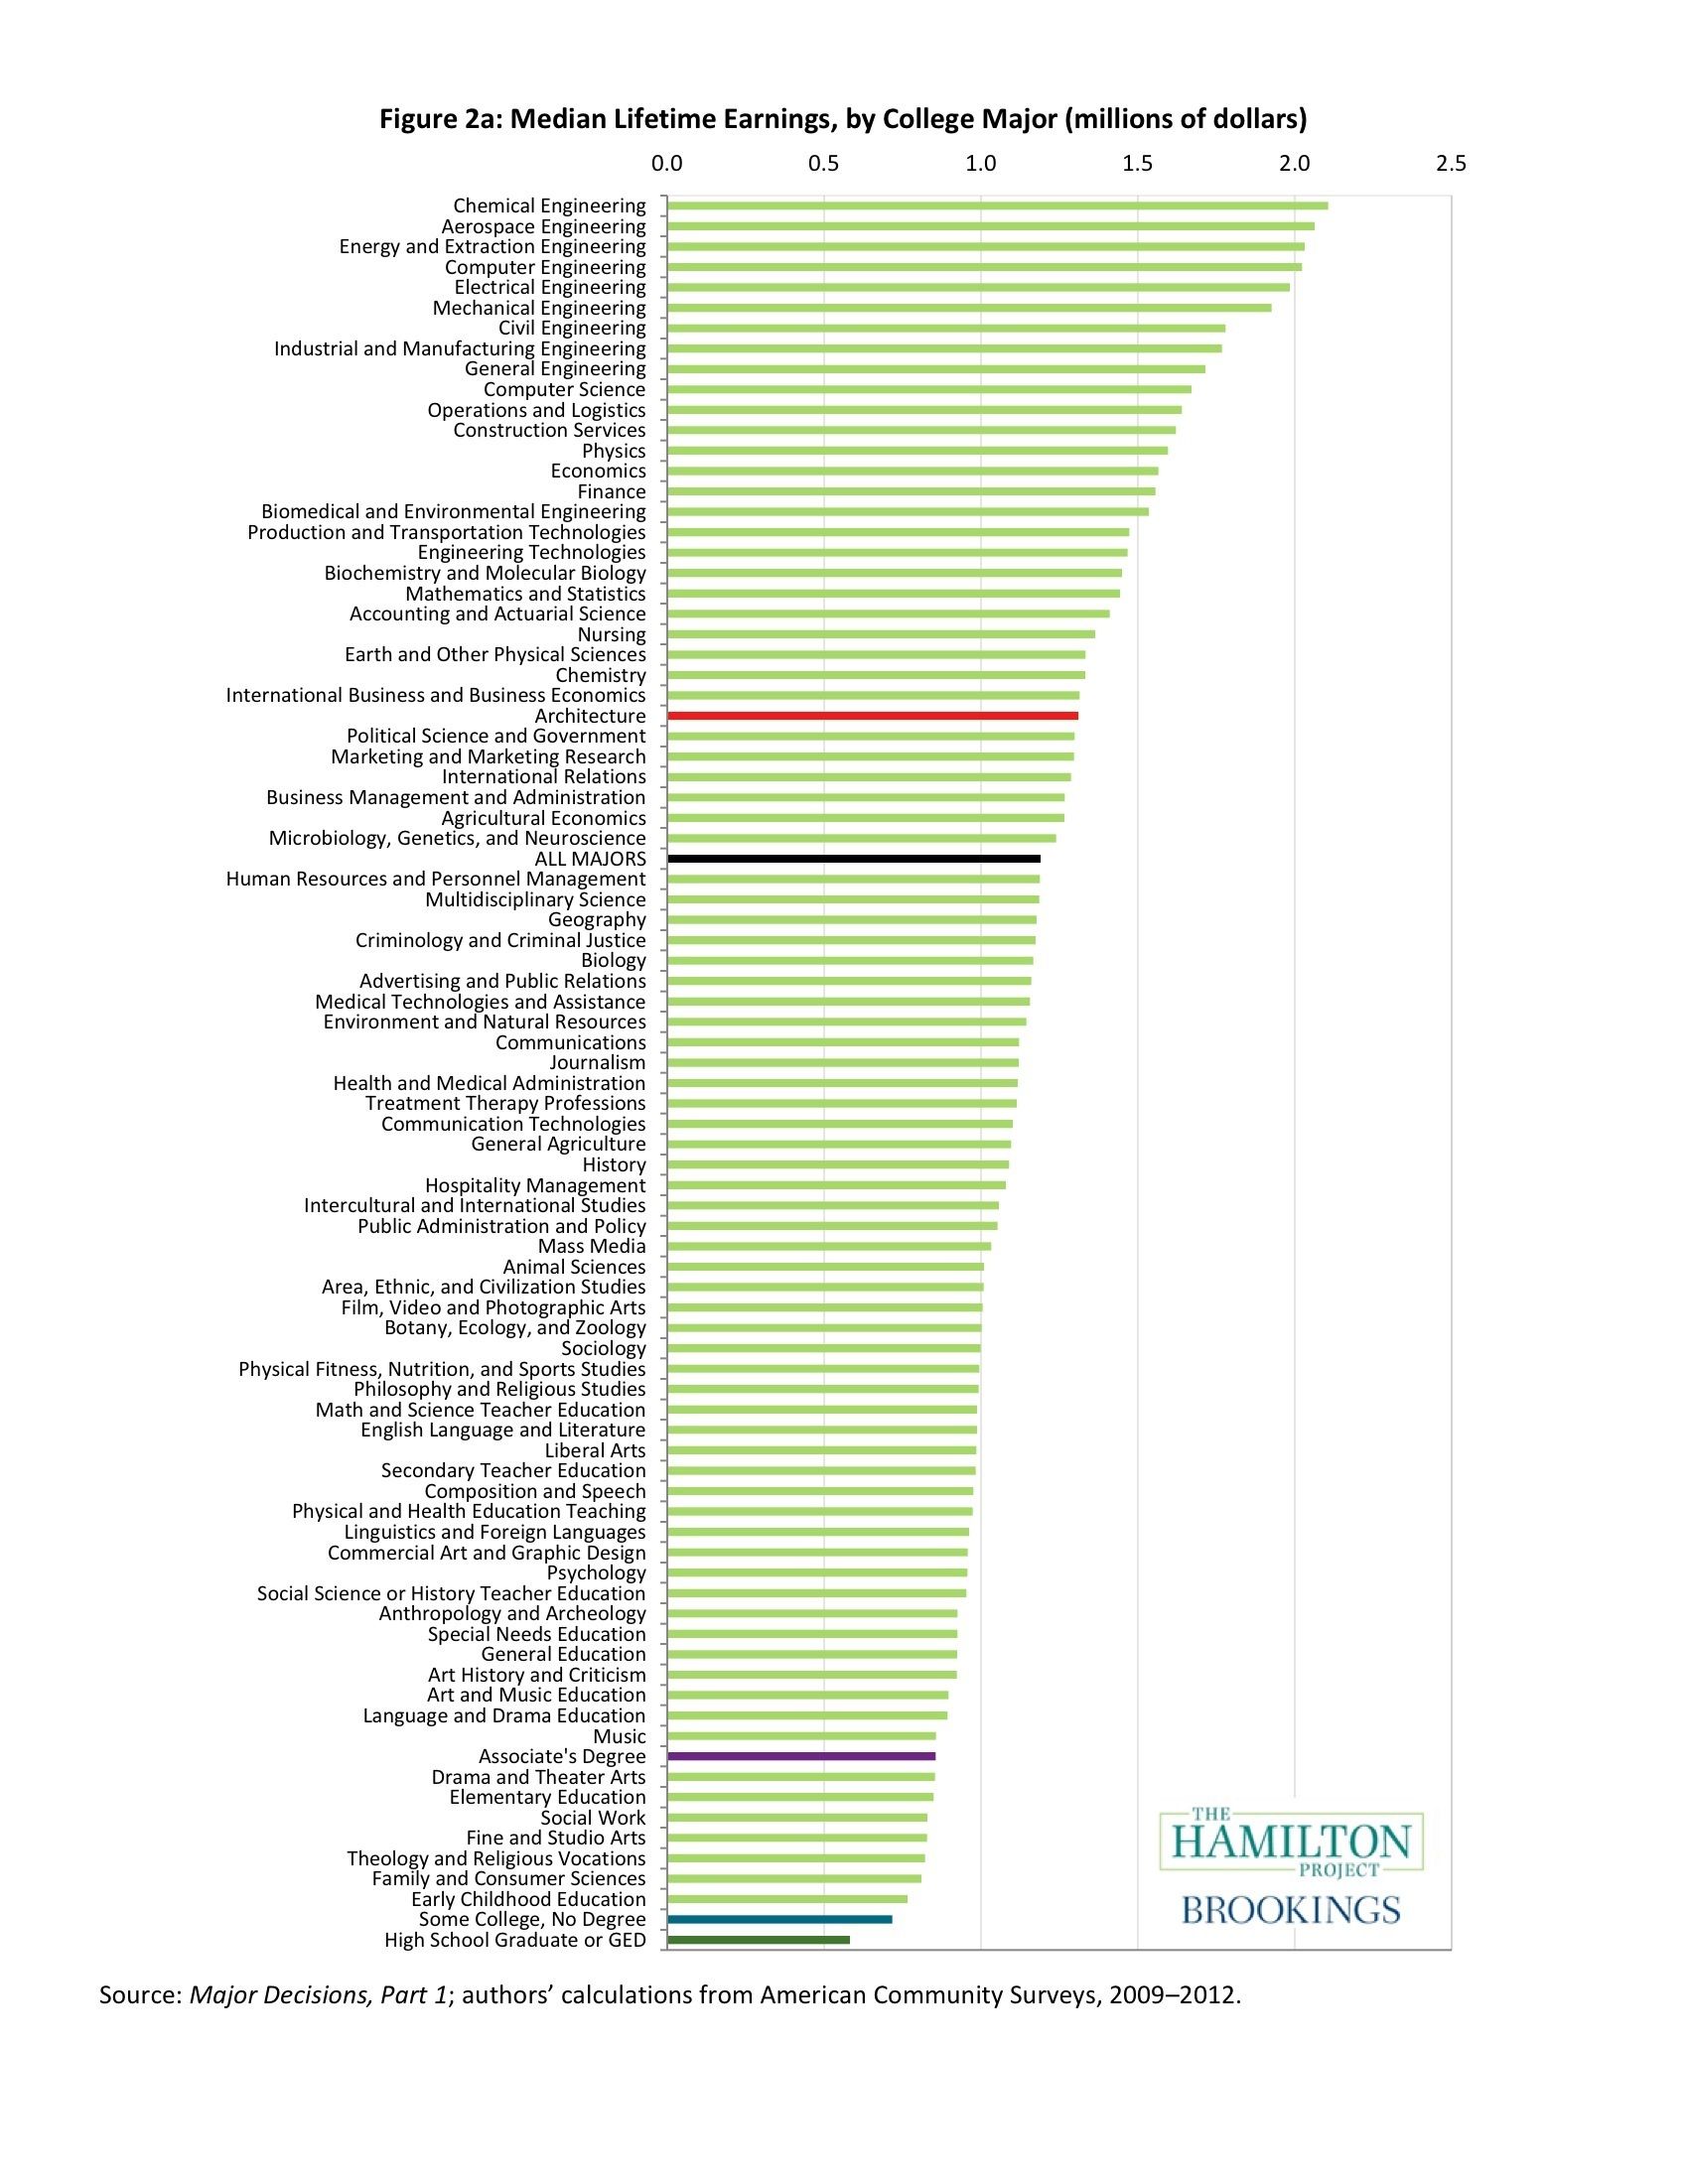 Tổng thu nhập trung bình của sinh viên tốt nghiệp ngành kiến trúc trong suốt sự nghiệp (đánh dấu màu đỏ so với tất cả các chuyên ngành khác (không bao gồm các trình độ sau đại học). Hình ảnh được cung cấp từ dự án Hamilton tại Học viện Brookings.